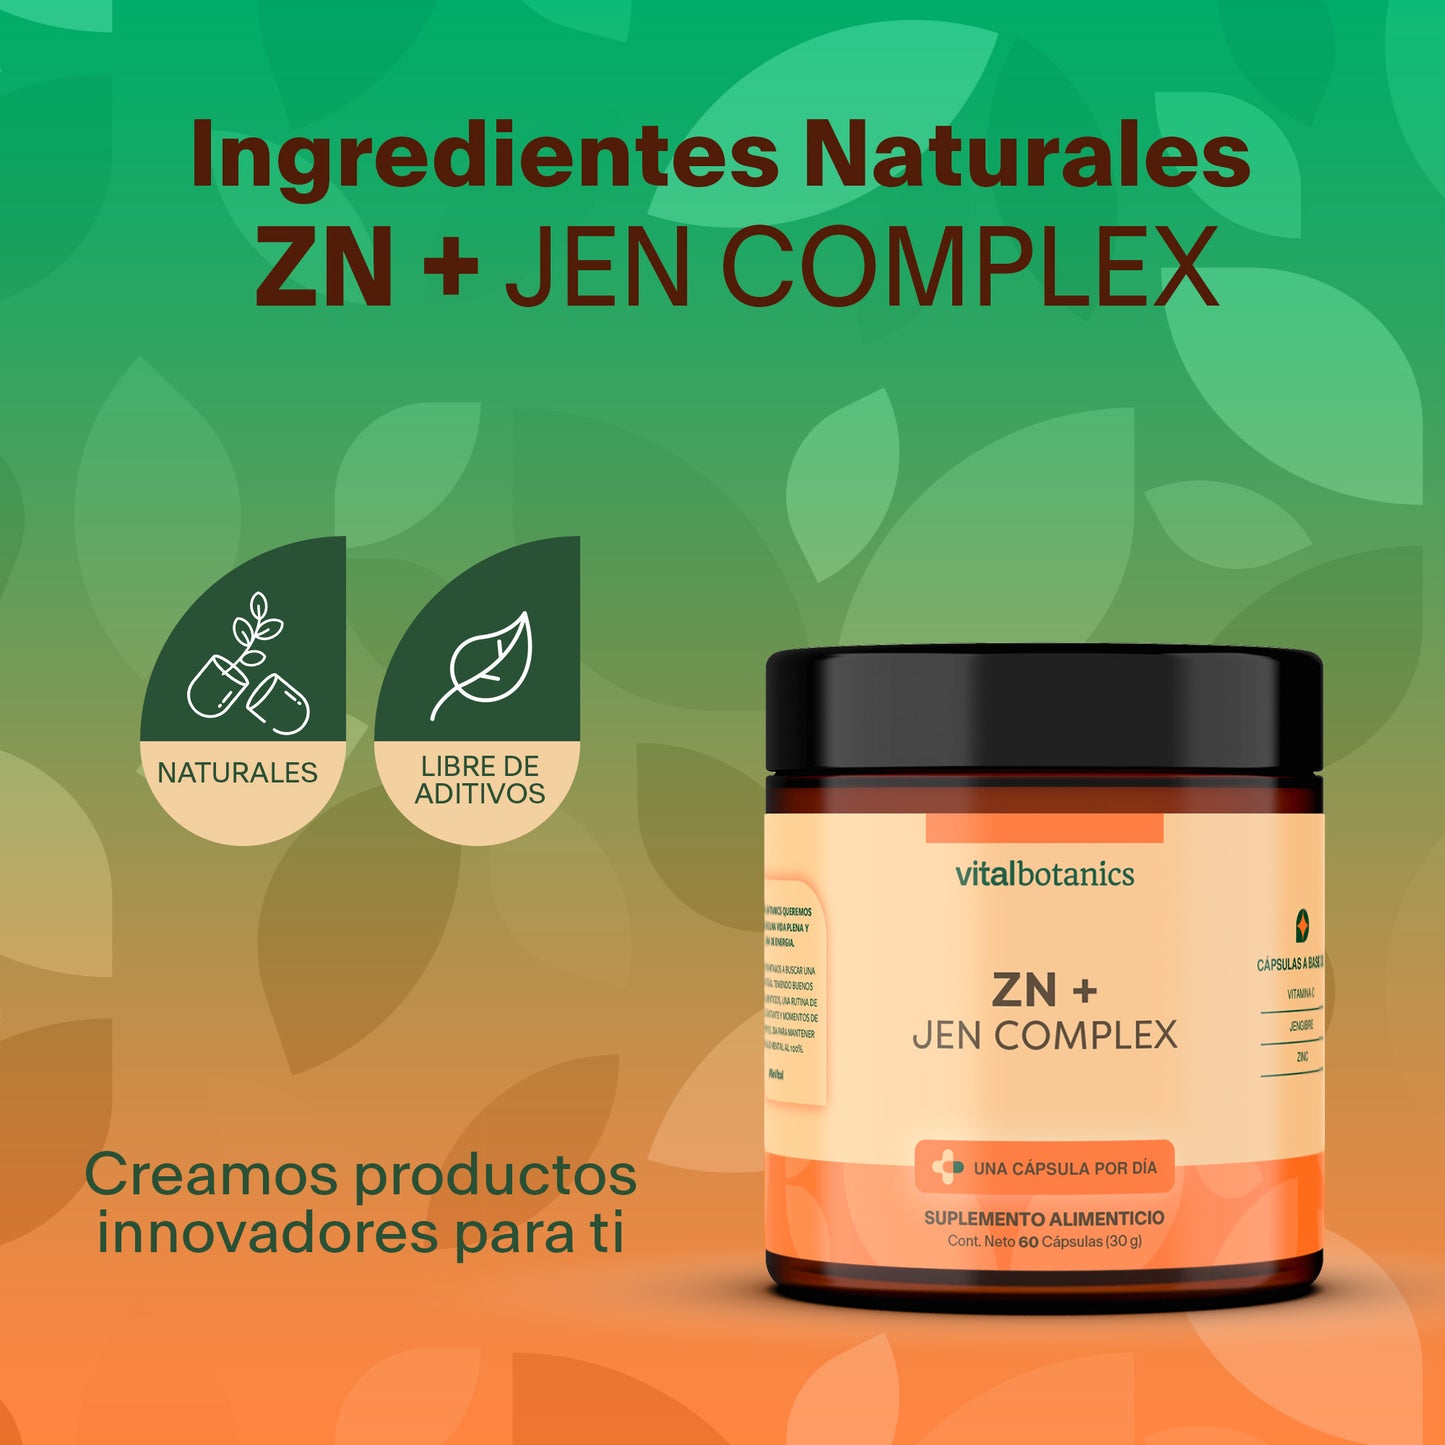 ZN + JEN COMPLEX | Vitamina C, Jengibre, Zinc.